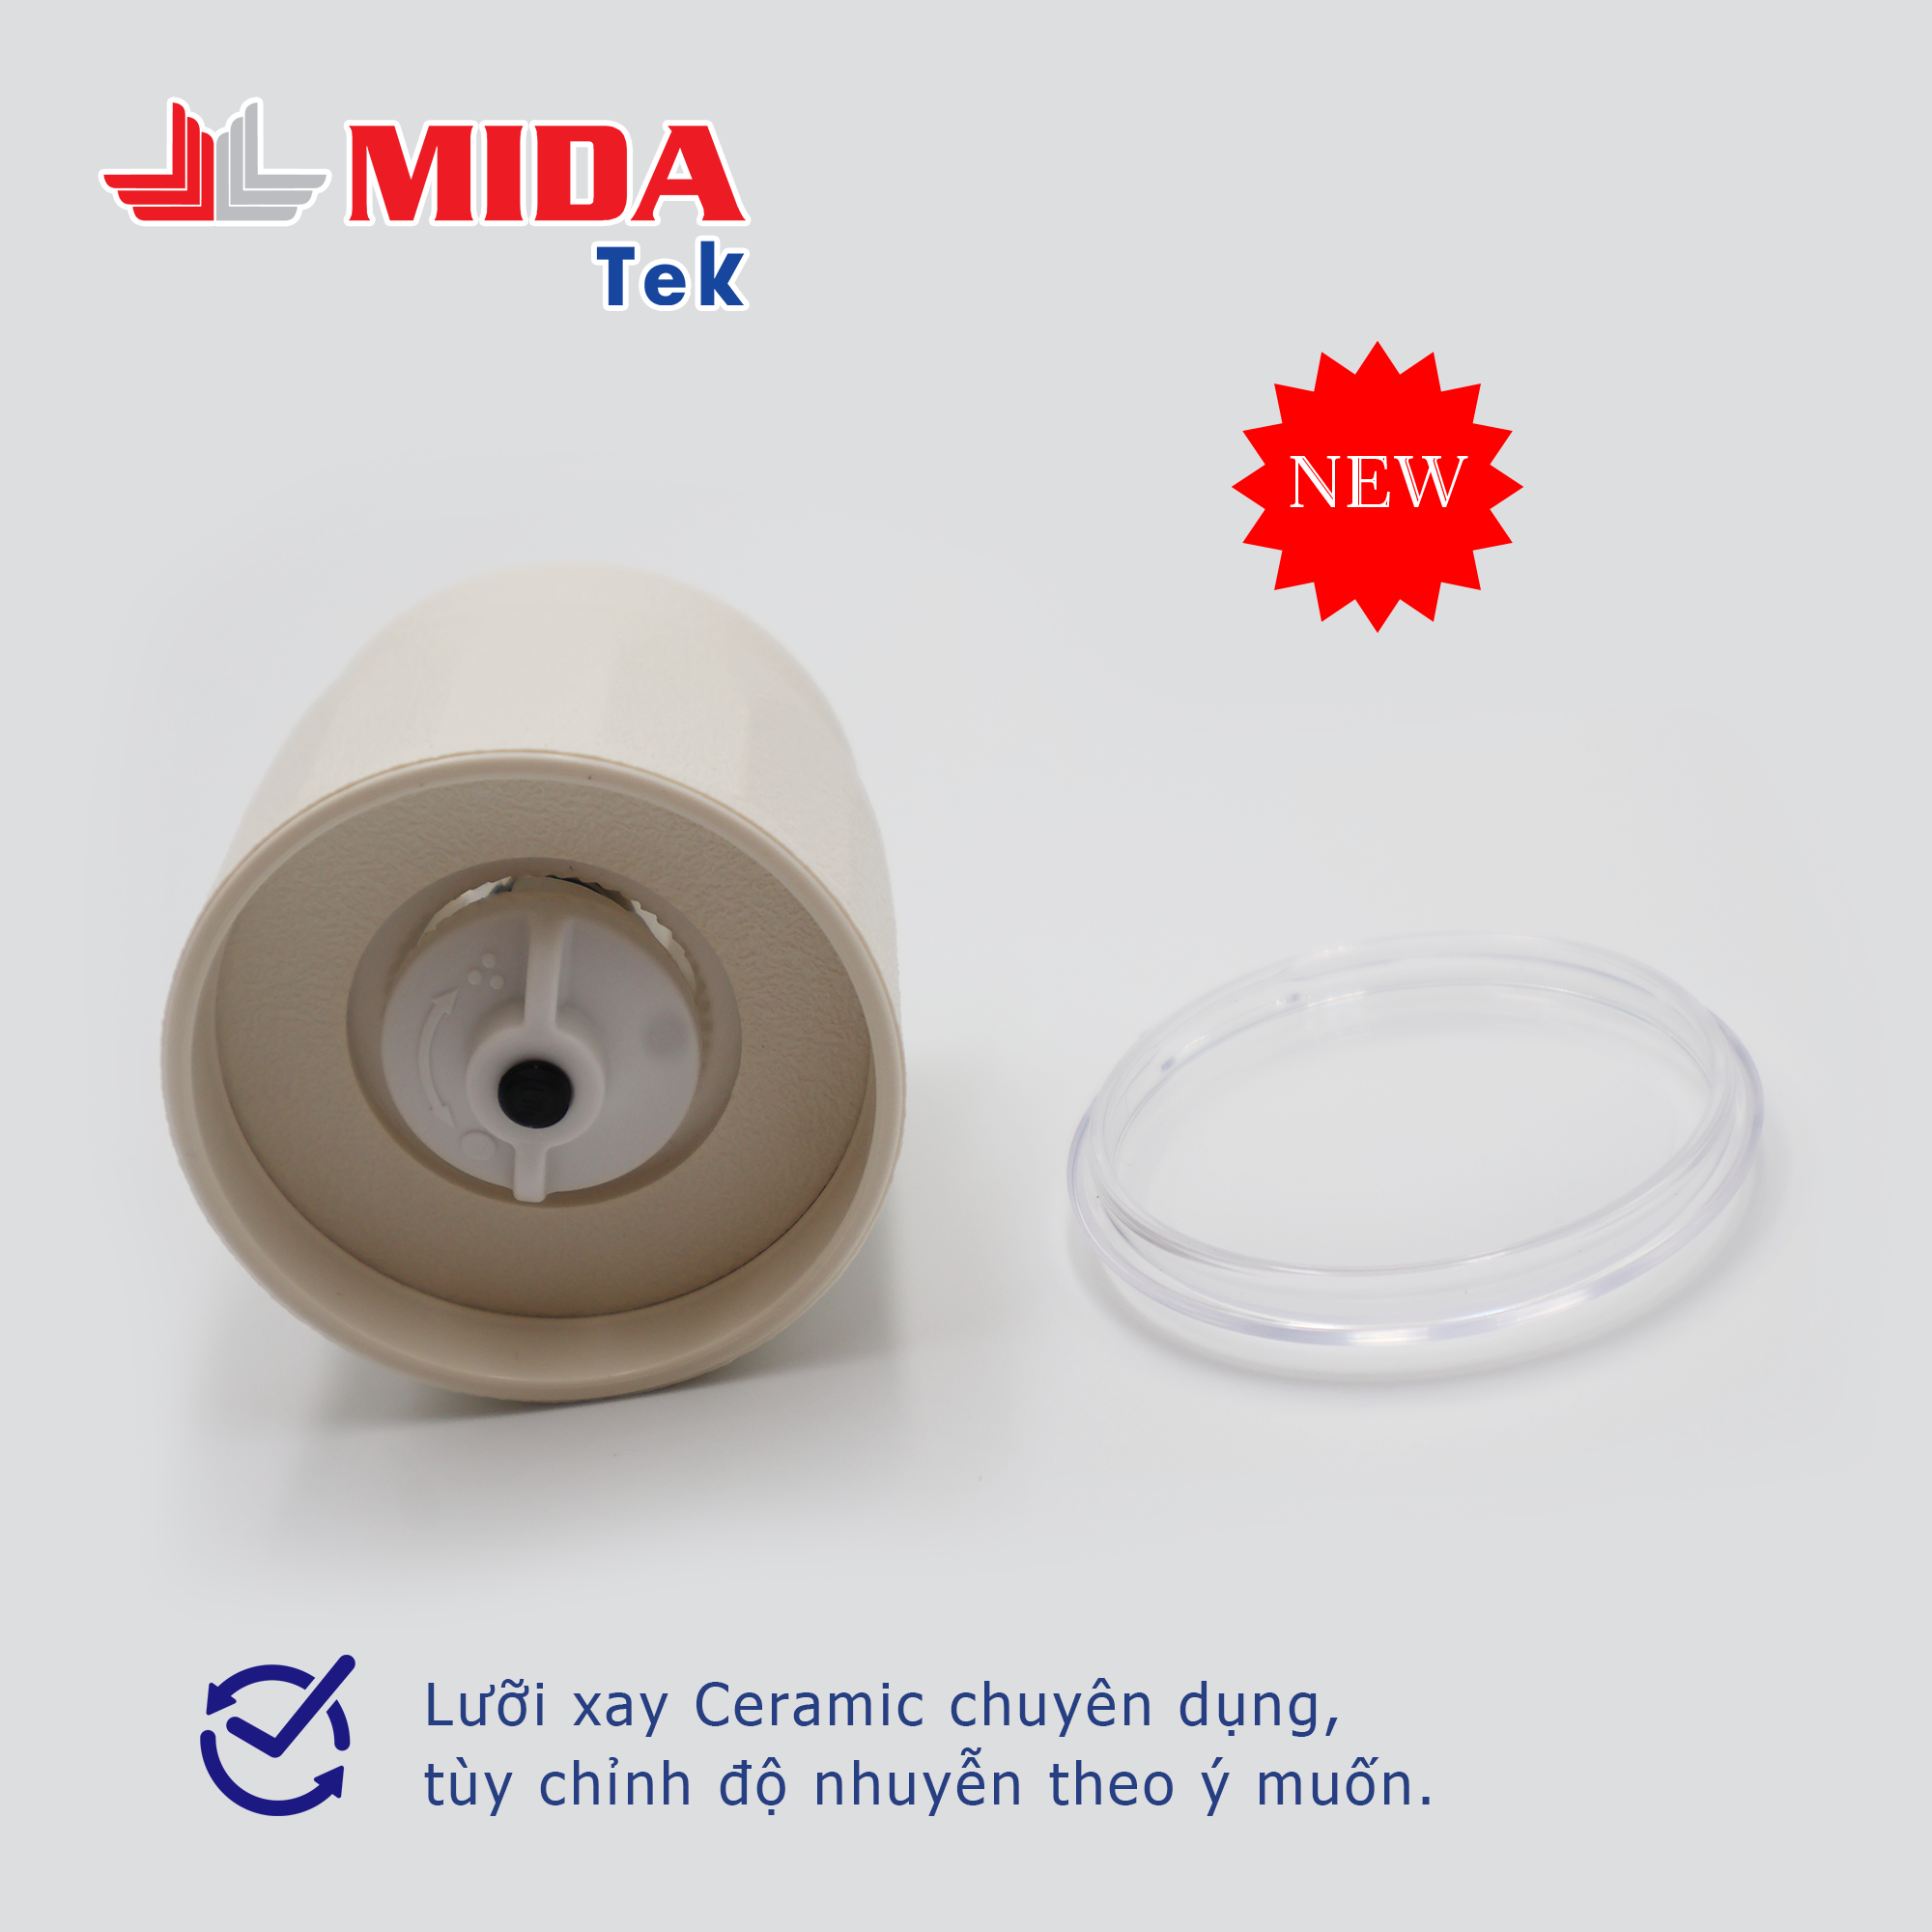 Hình ảnh Bộ 2 Nắp xay tiêu MIDATEK cối xay ceramic Màu Kem cho hũ nhựa đường kính 38mm